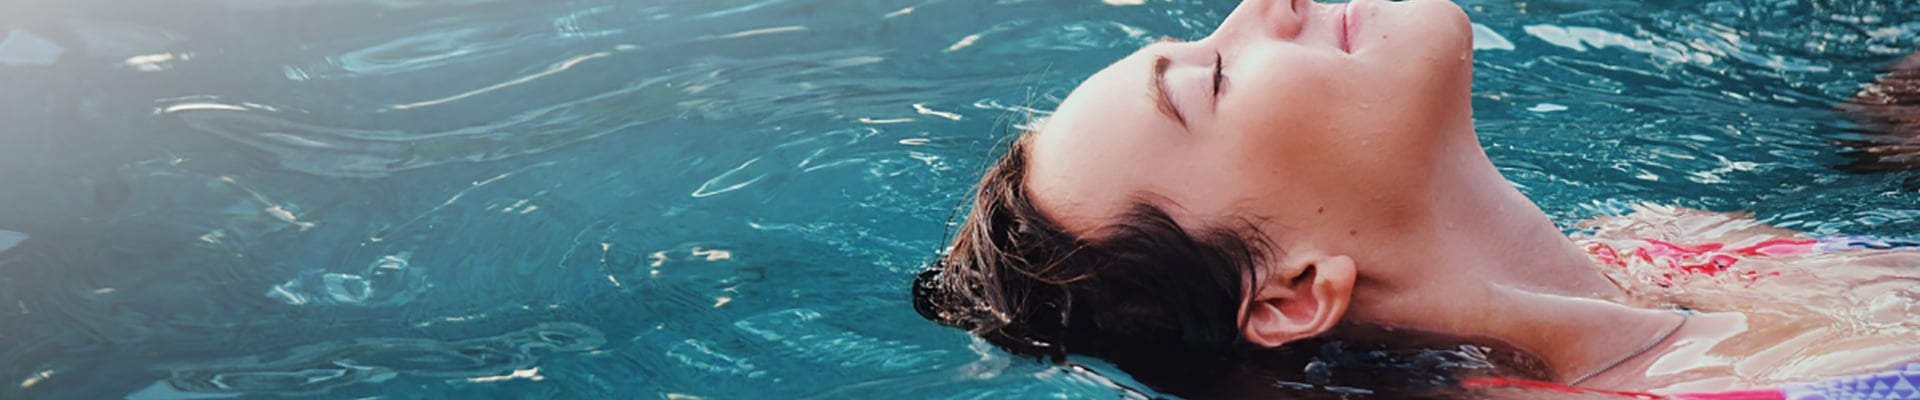 Mujer nadando en la piscina Suba Colsubsidio